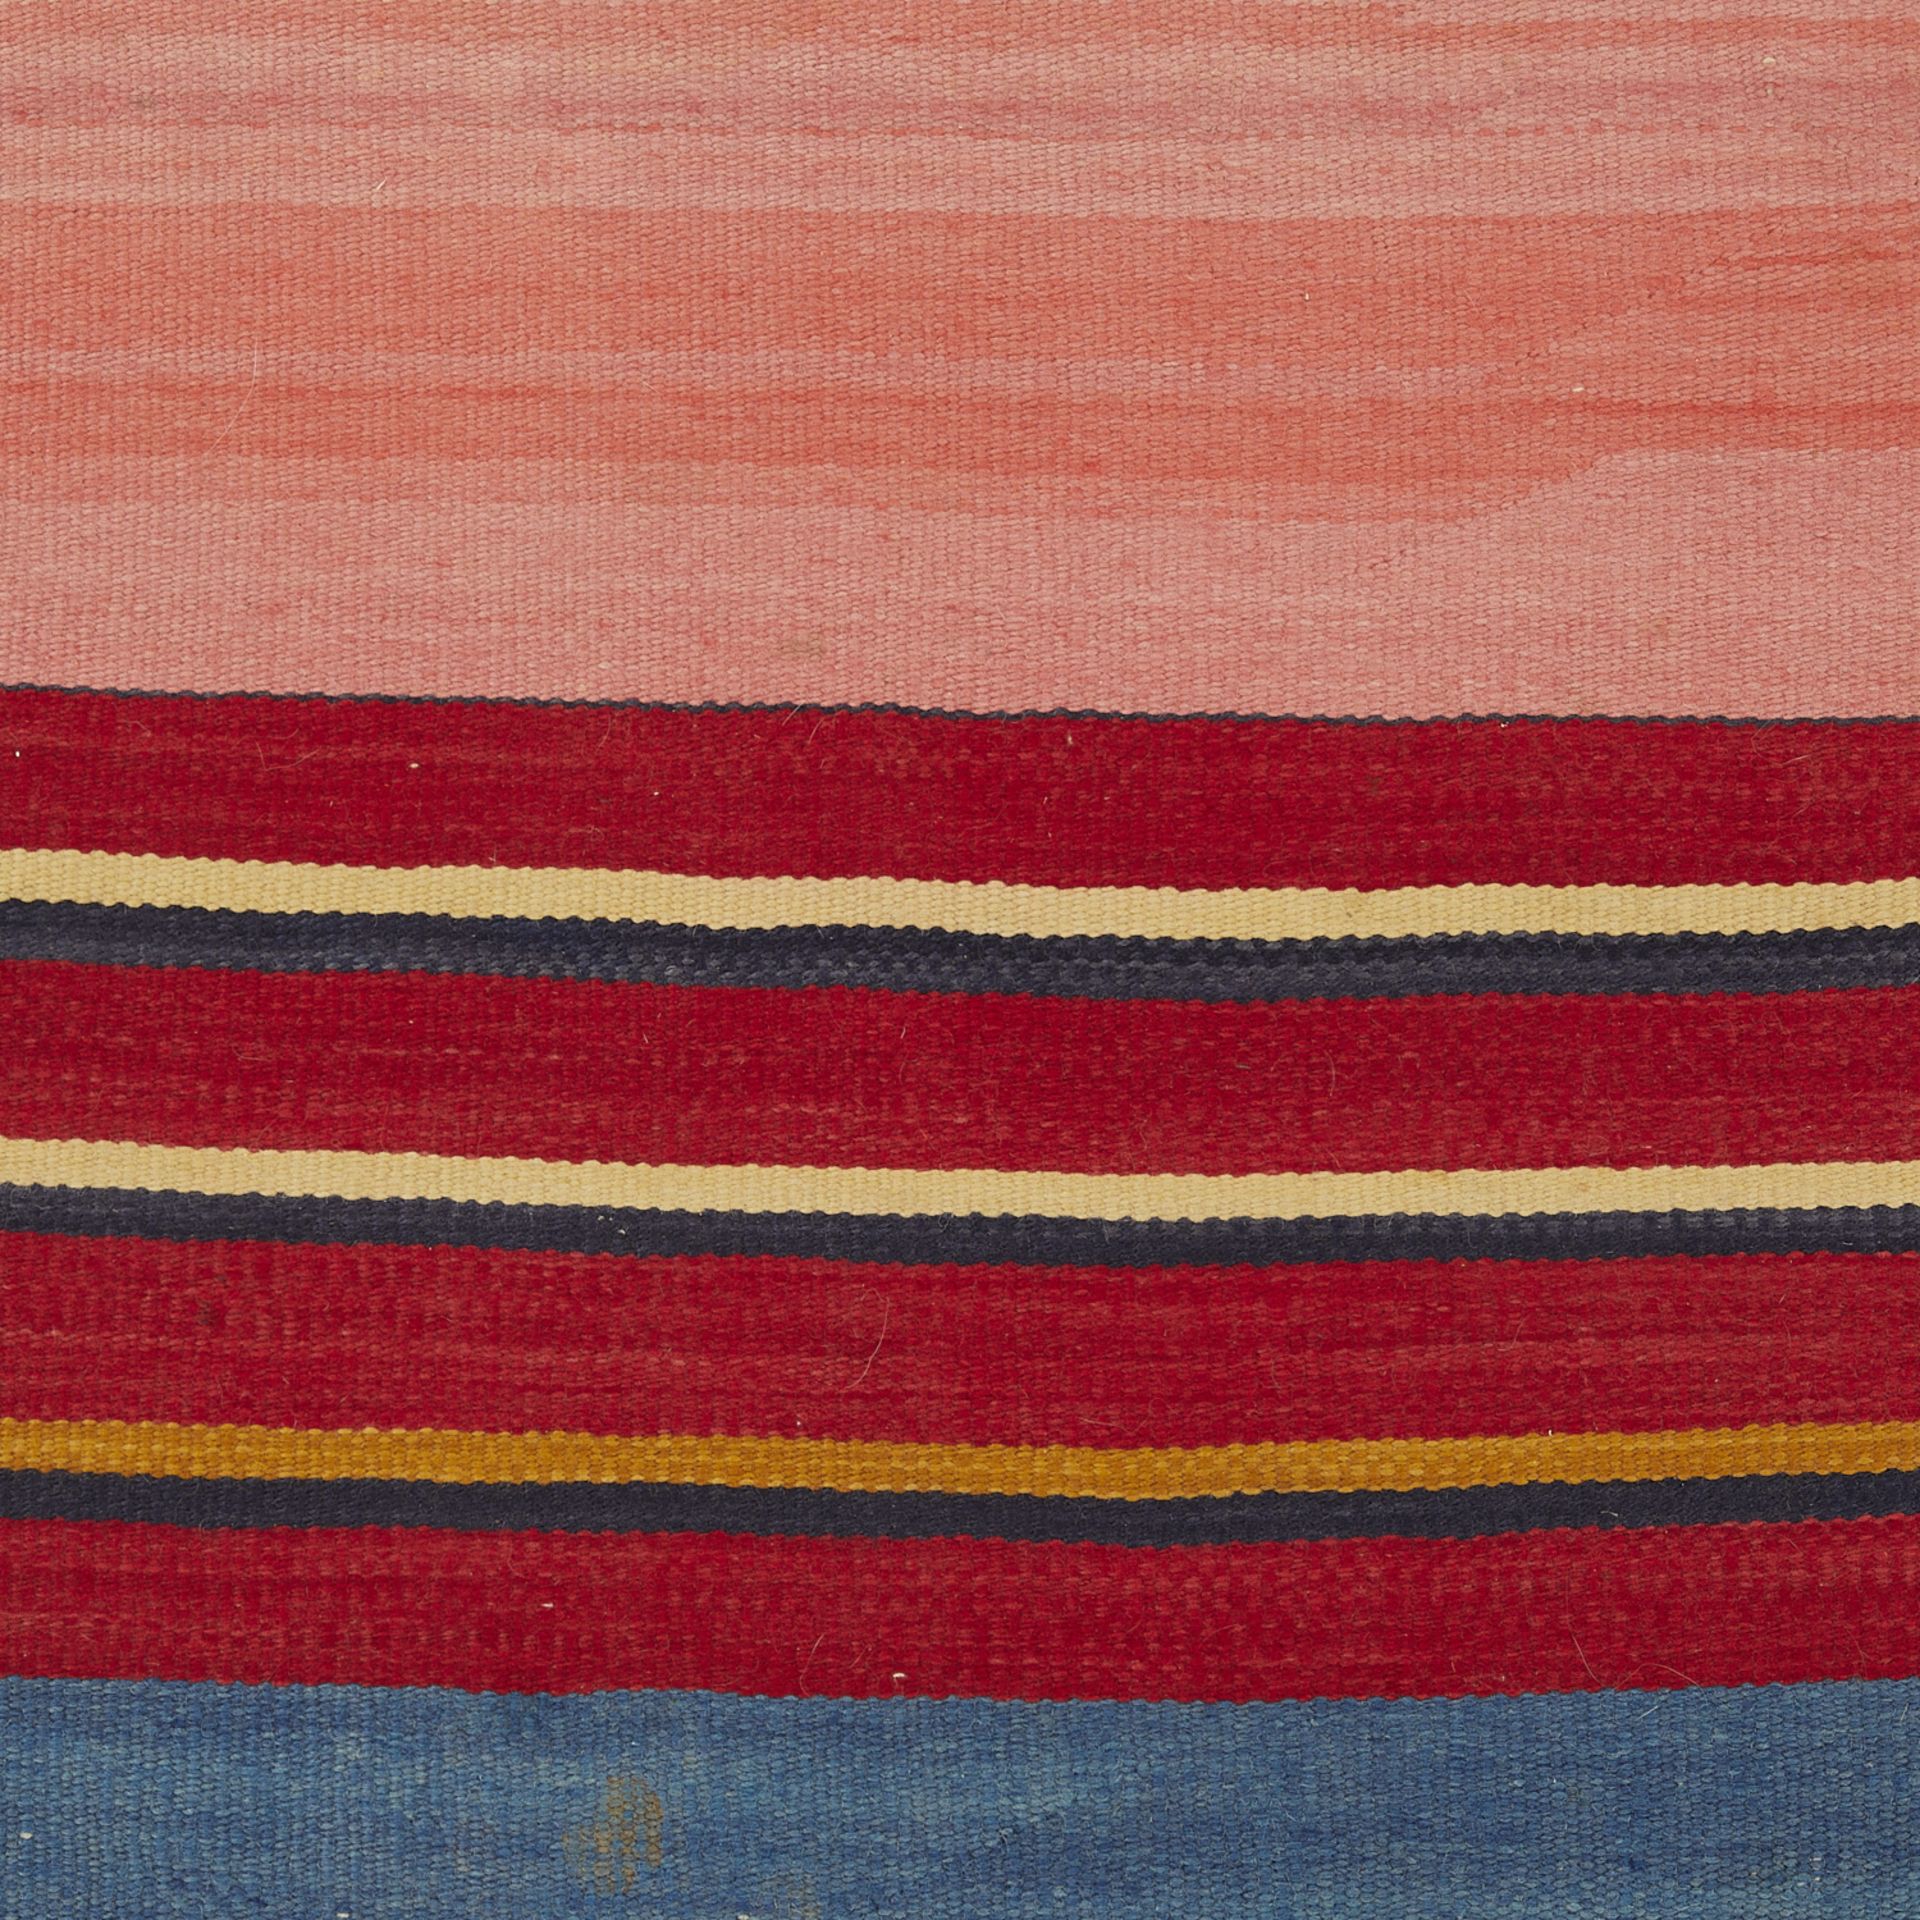 Navajo Adult Wearing Blanket 4'5" x 3'5" - Image 4 of 6